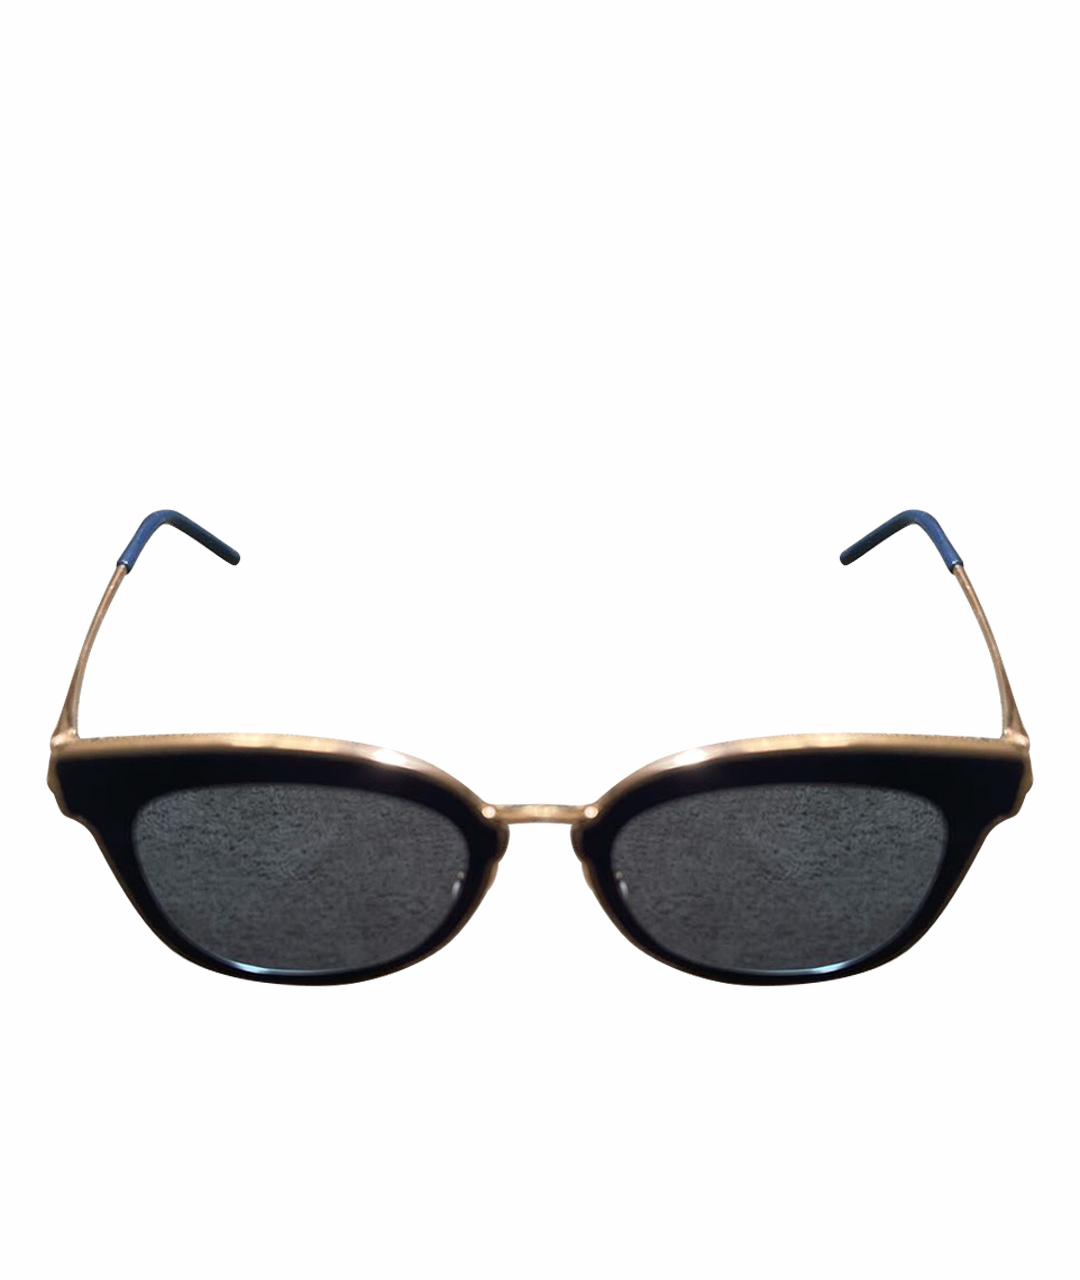 JIMMY CHOO Синие металлические солнцезащитные очки, фото 1